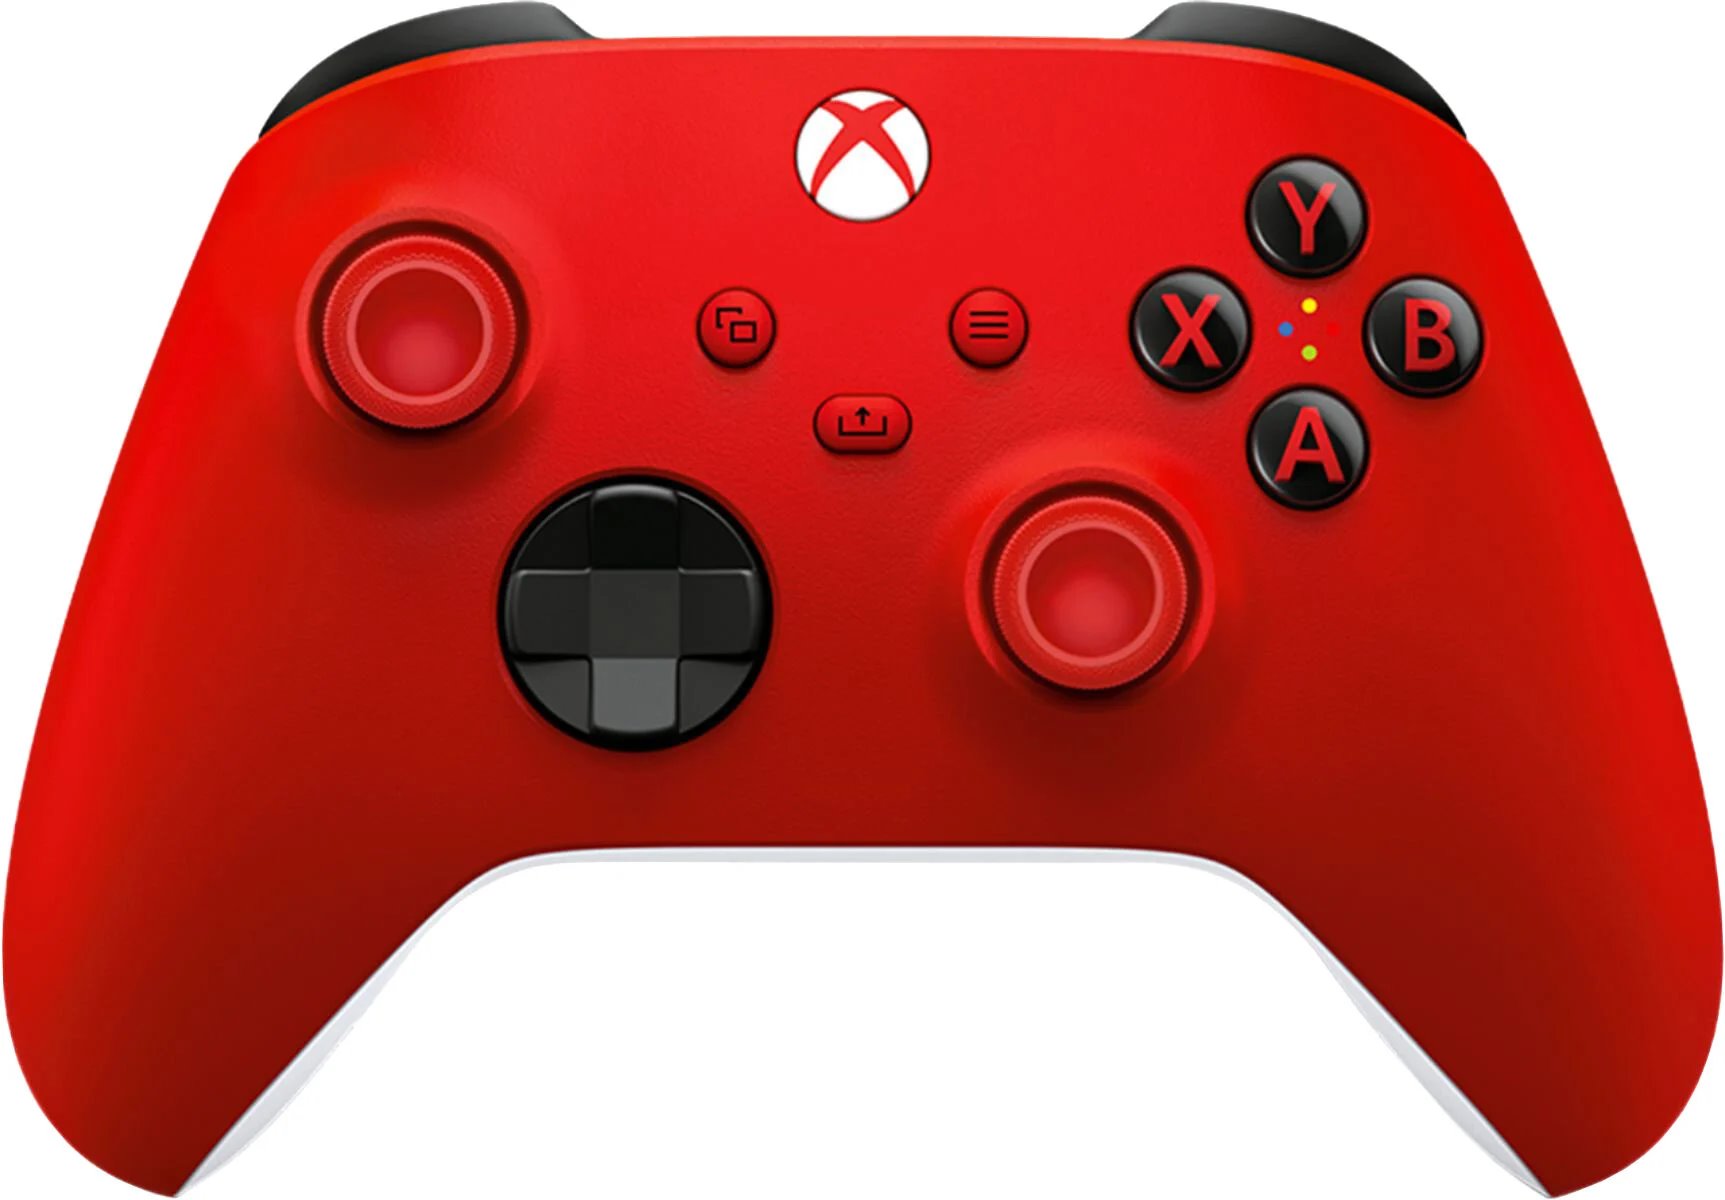 Microsoft Bezdrátový ovladač pro Xbox - Pulse RED (QAU-00012)